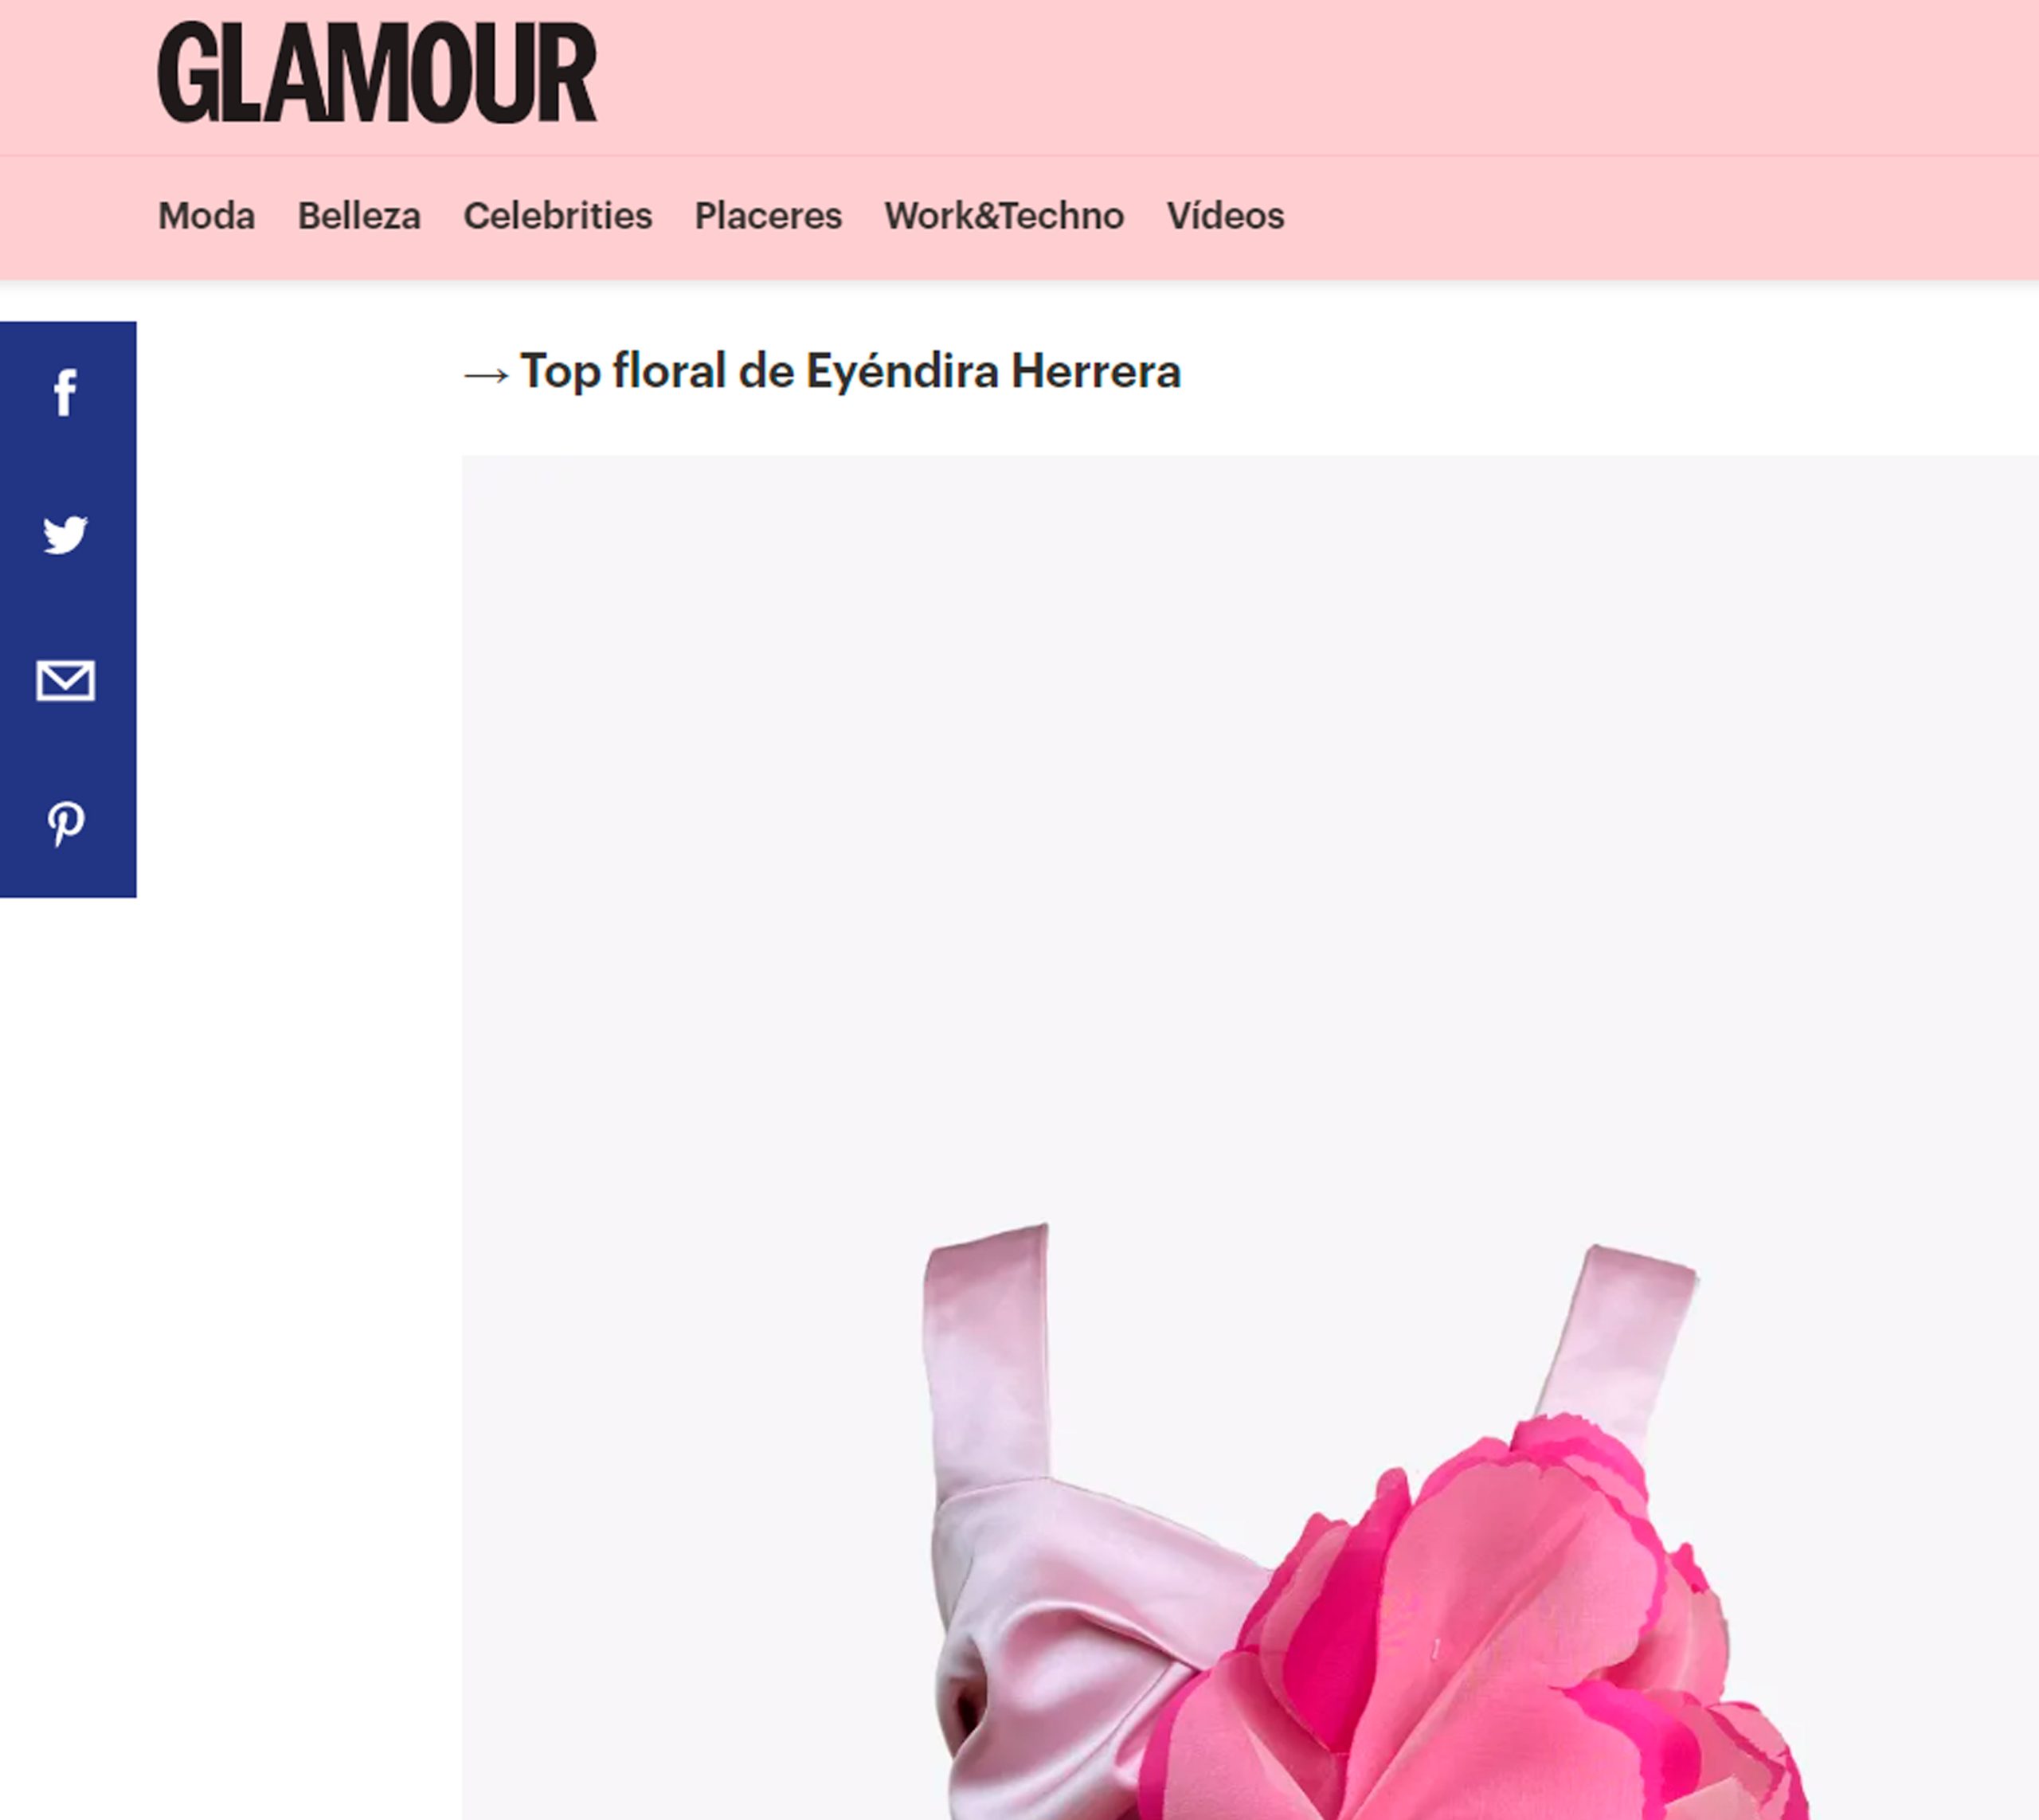 GLAMOUR : "El top flor es el más visto en las despedidas de soltera españolas"